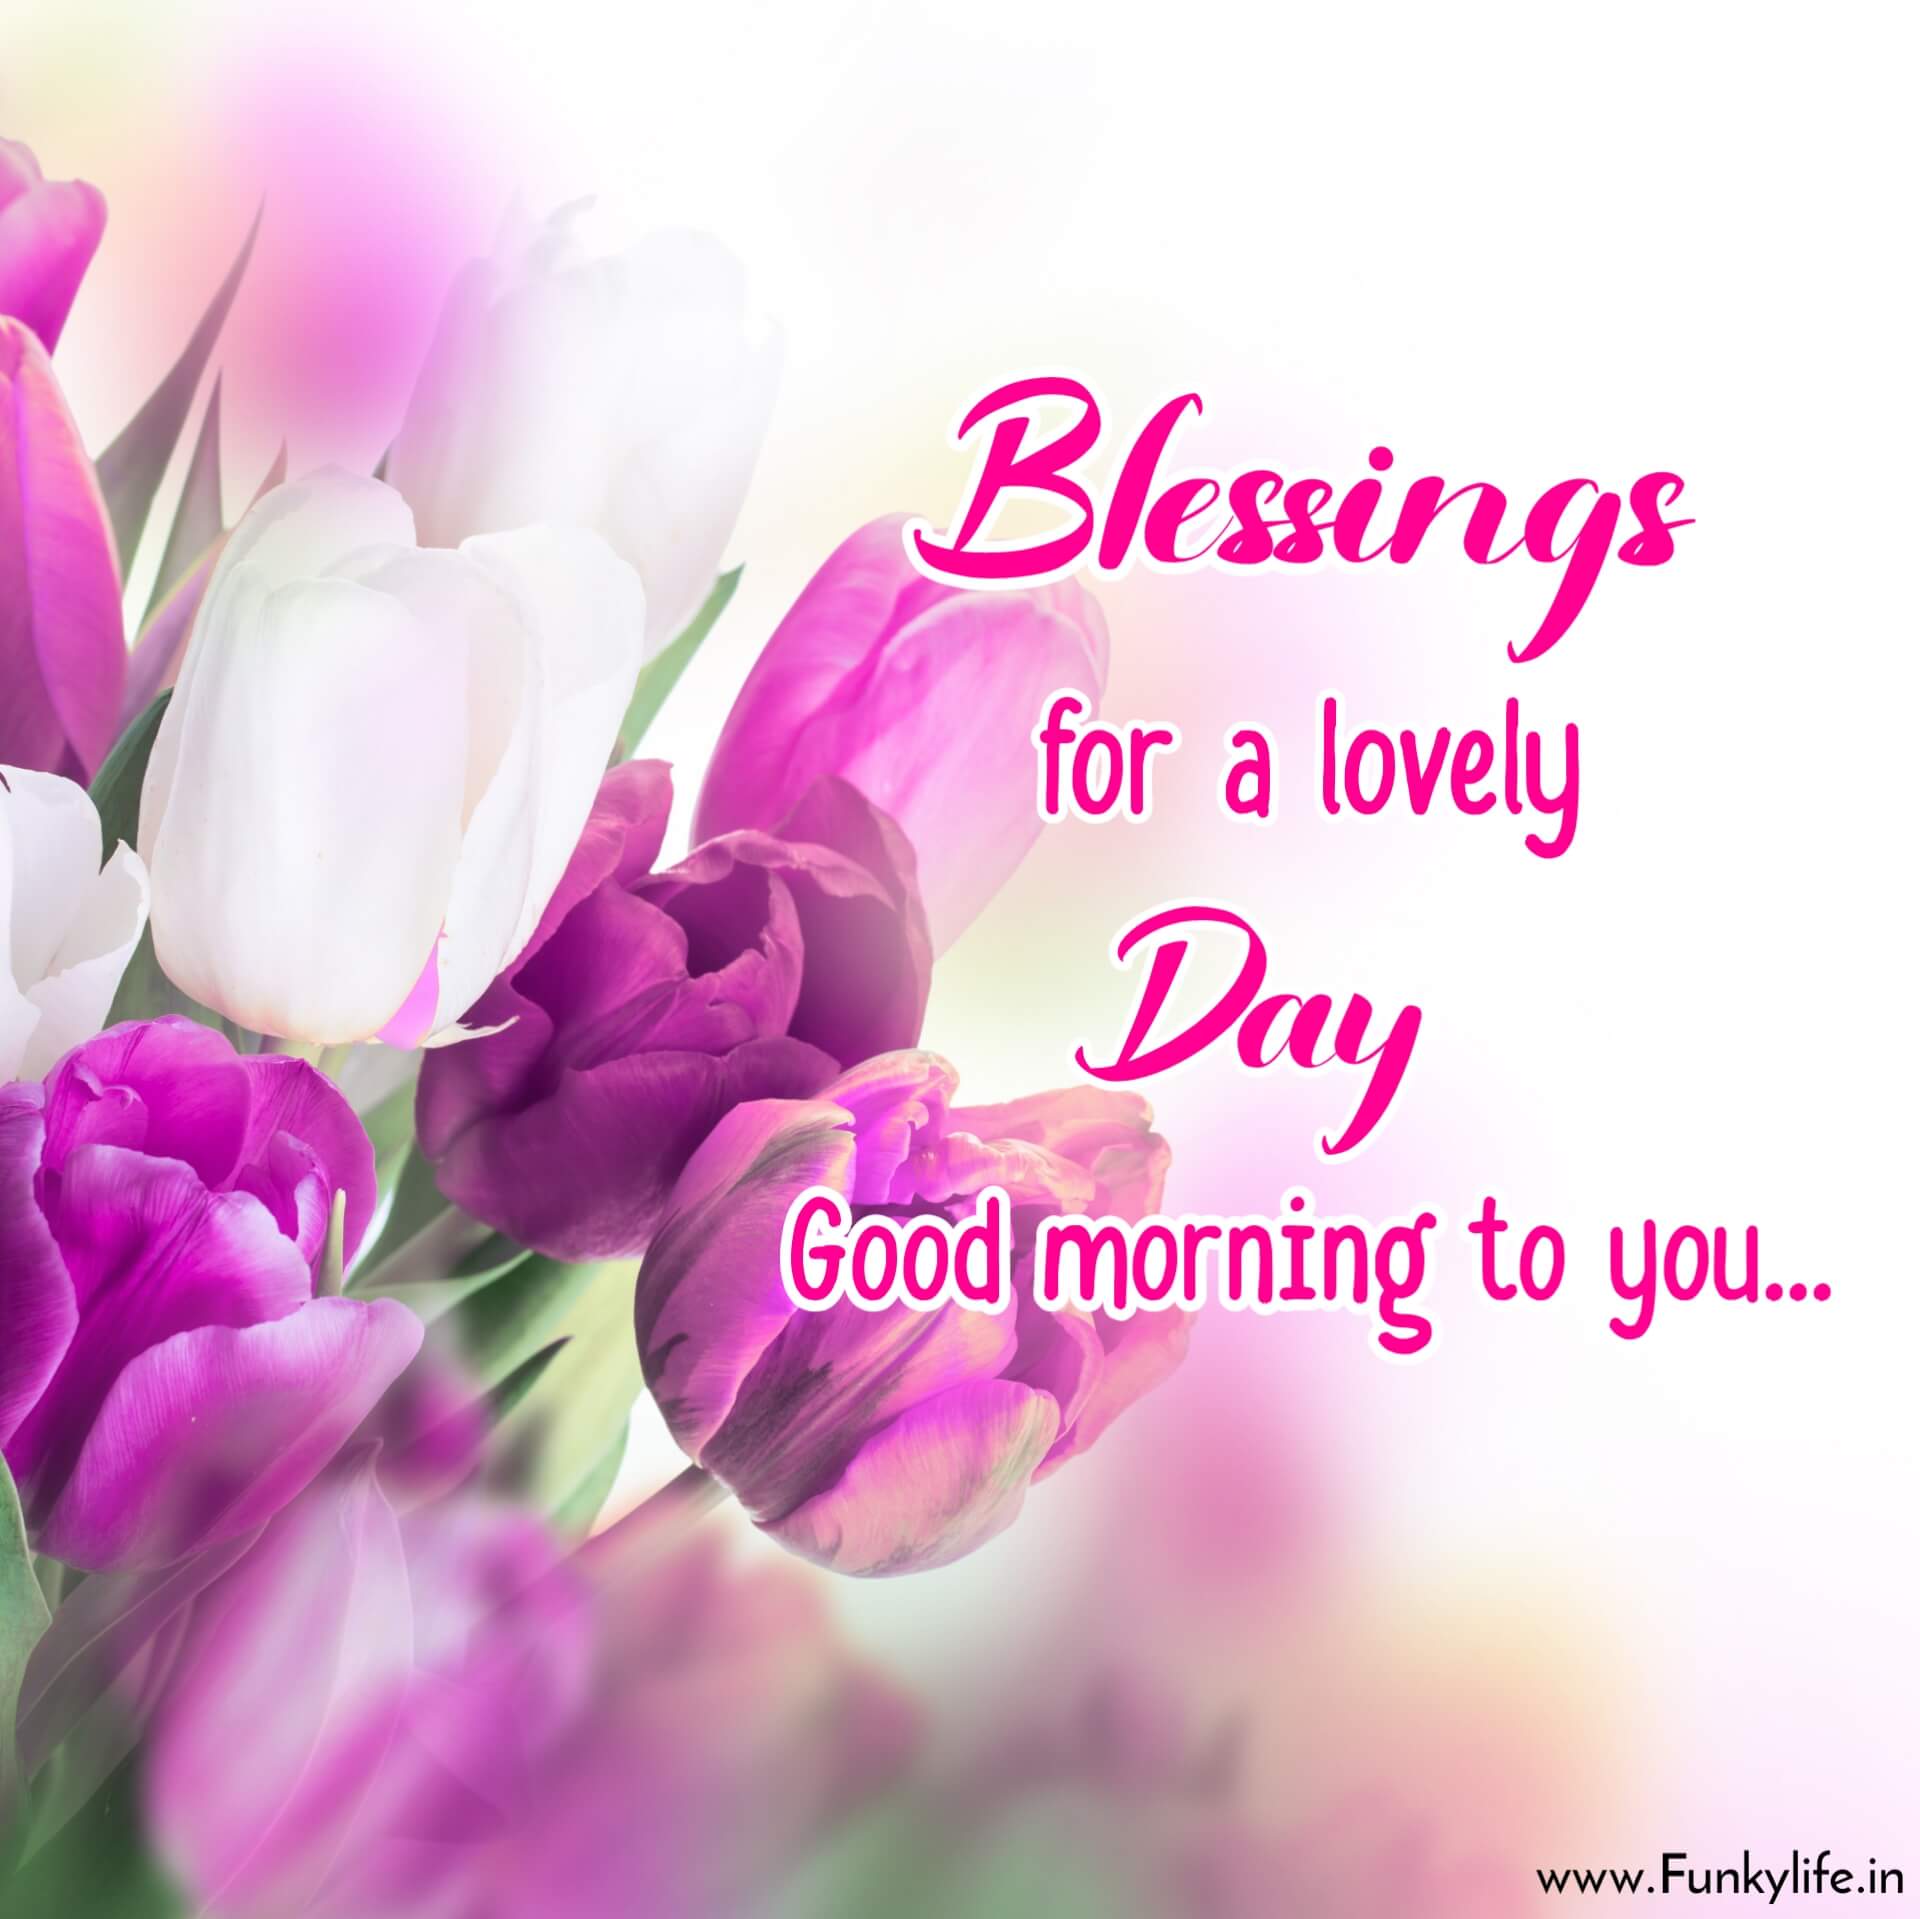 Blessings for a lovely day good morning